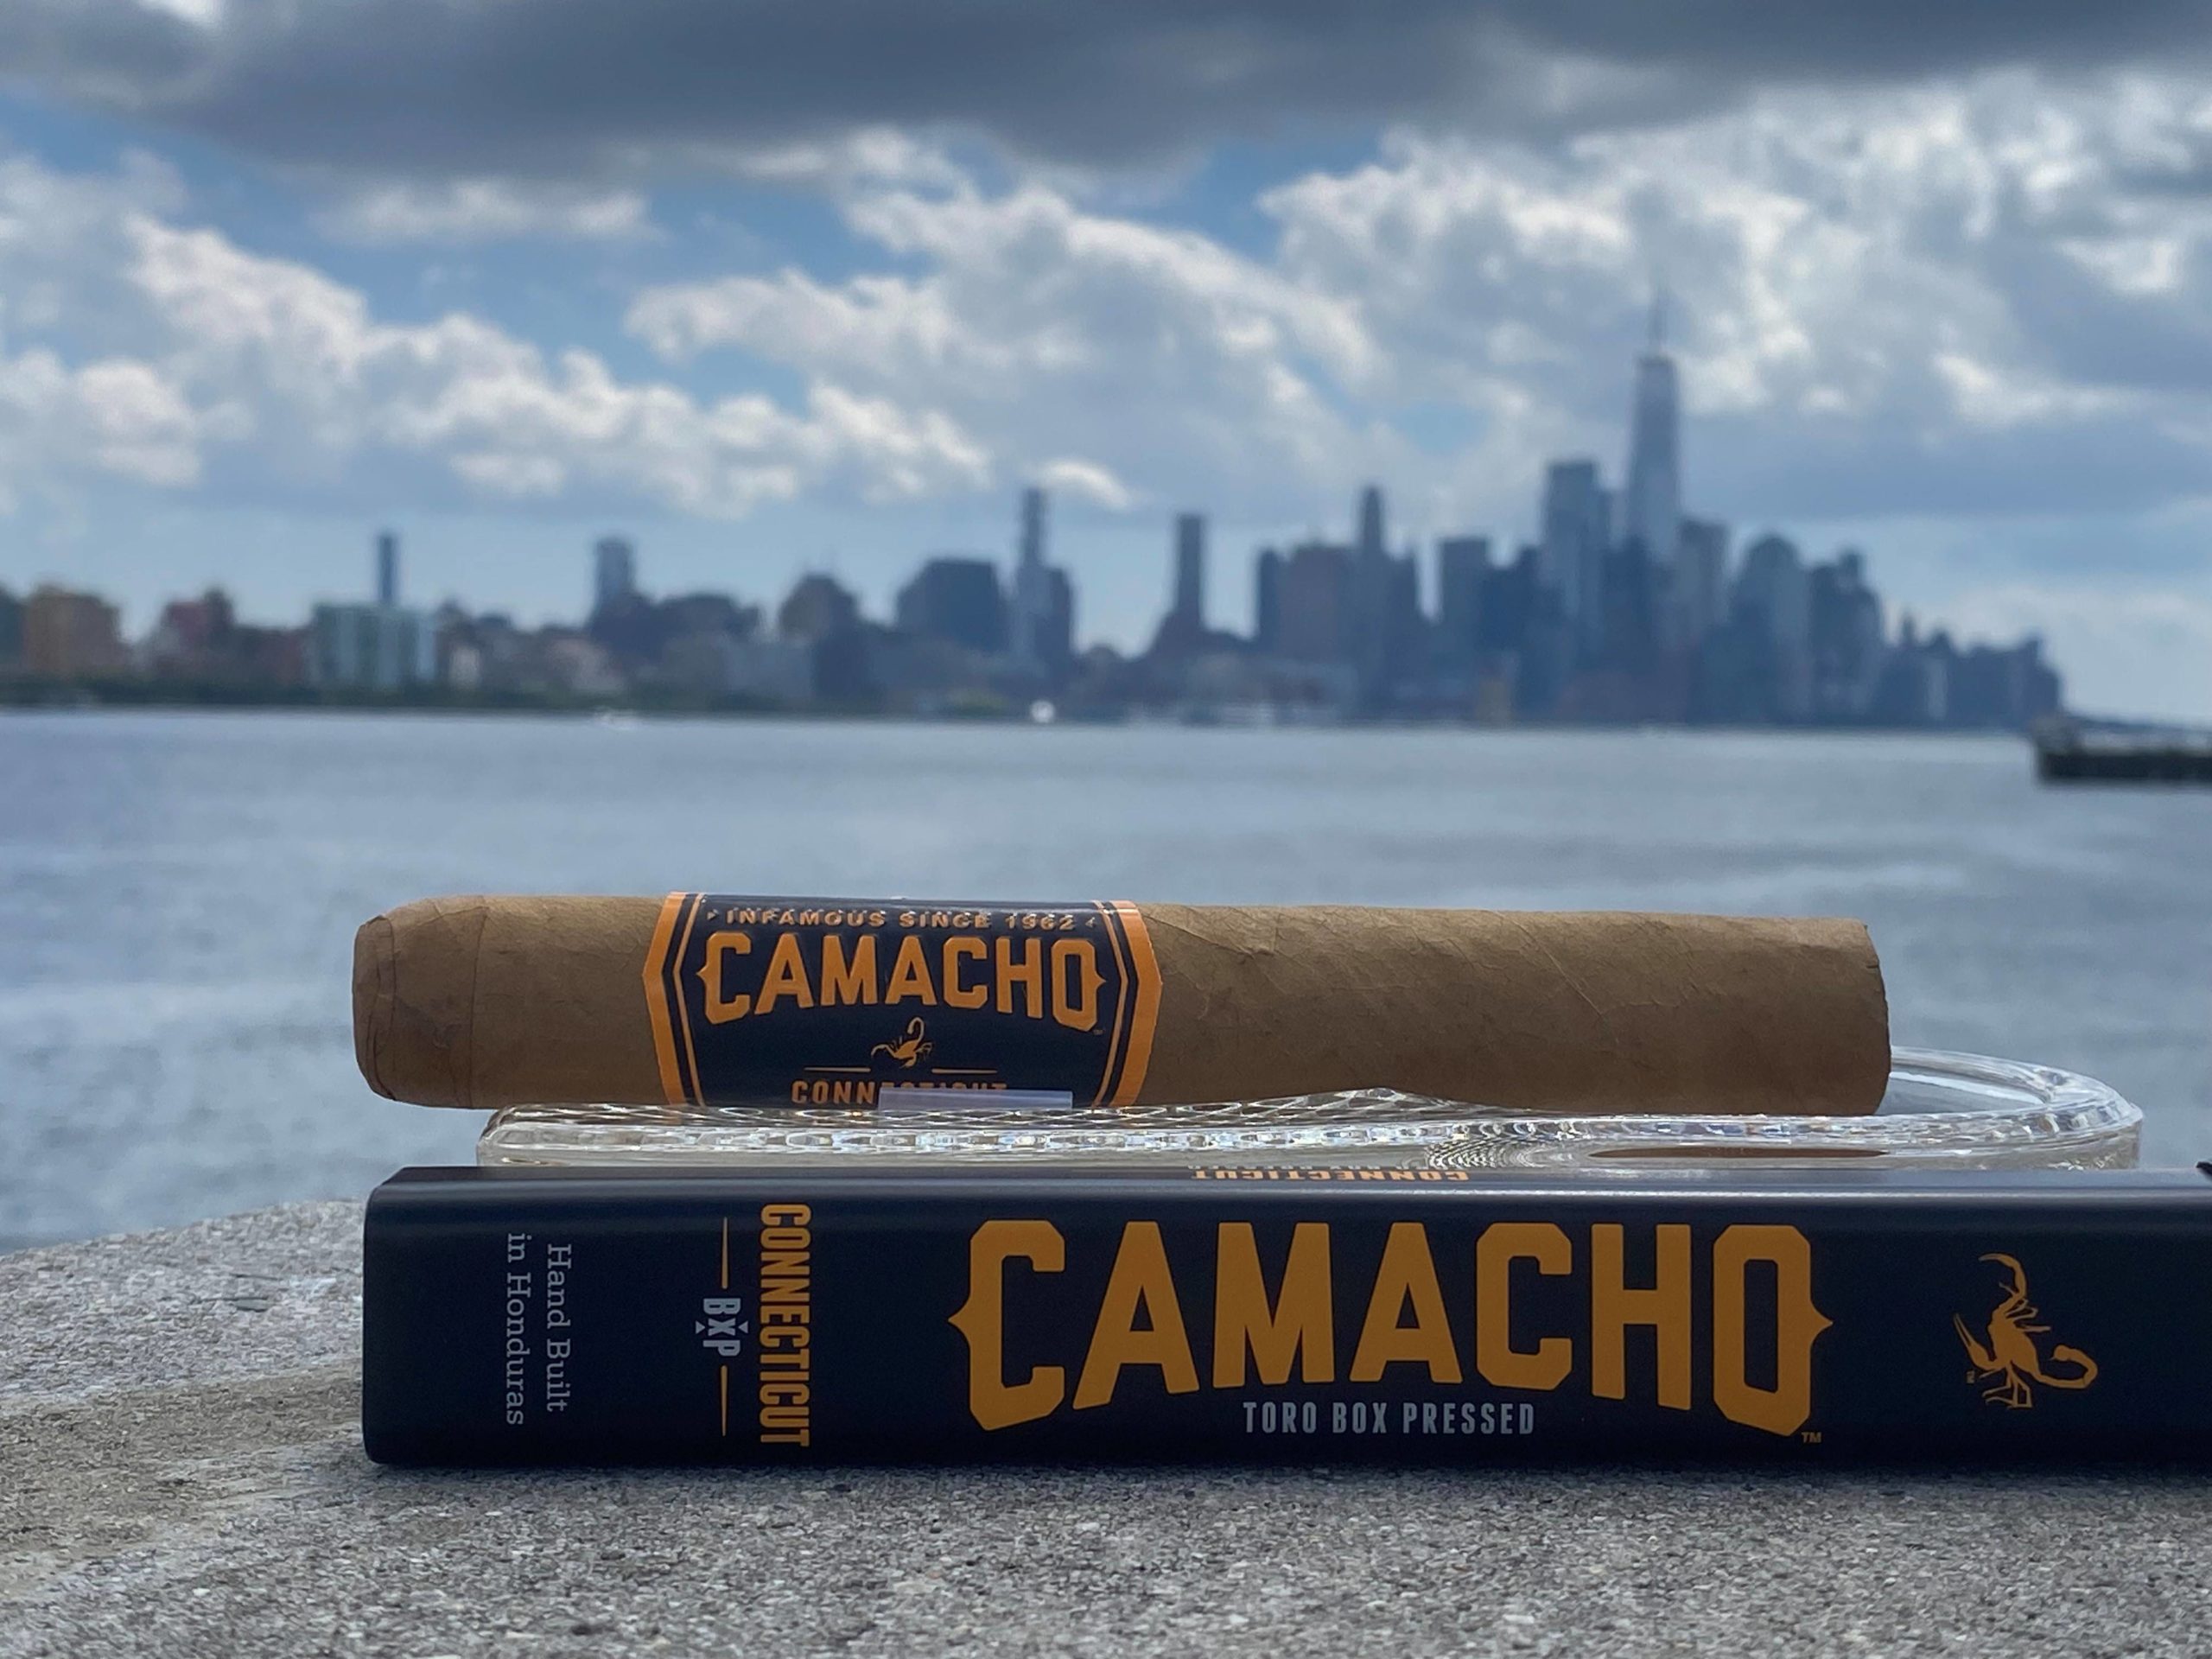 Camacho Toro Box Pressed – Connecticut